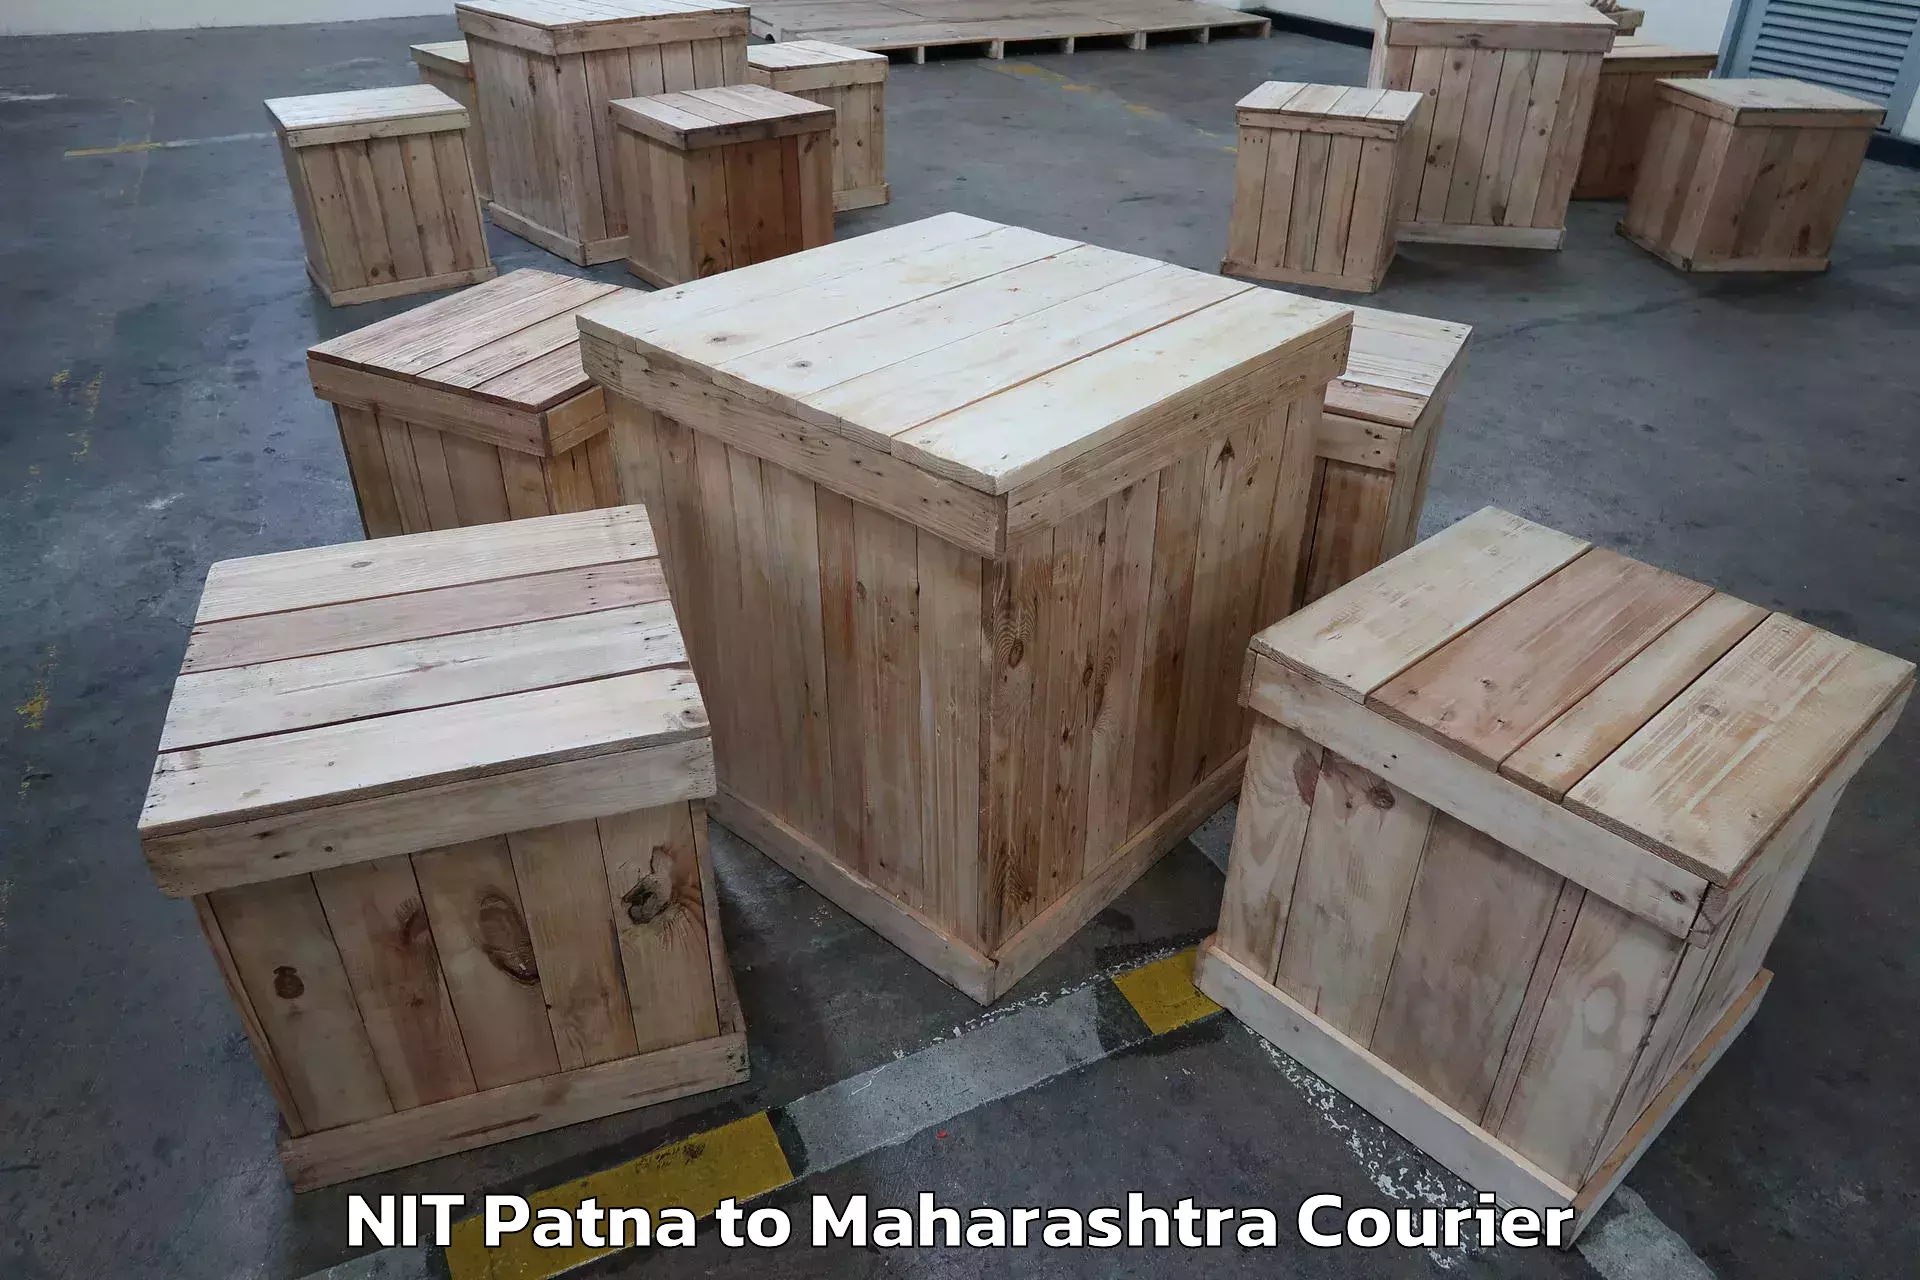 Full-service furniture transport NIT Patna to Parner